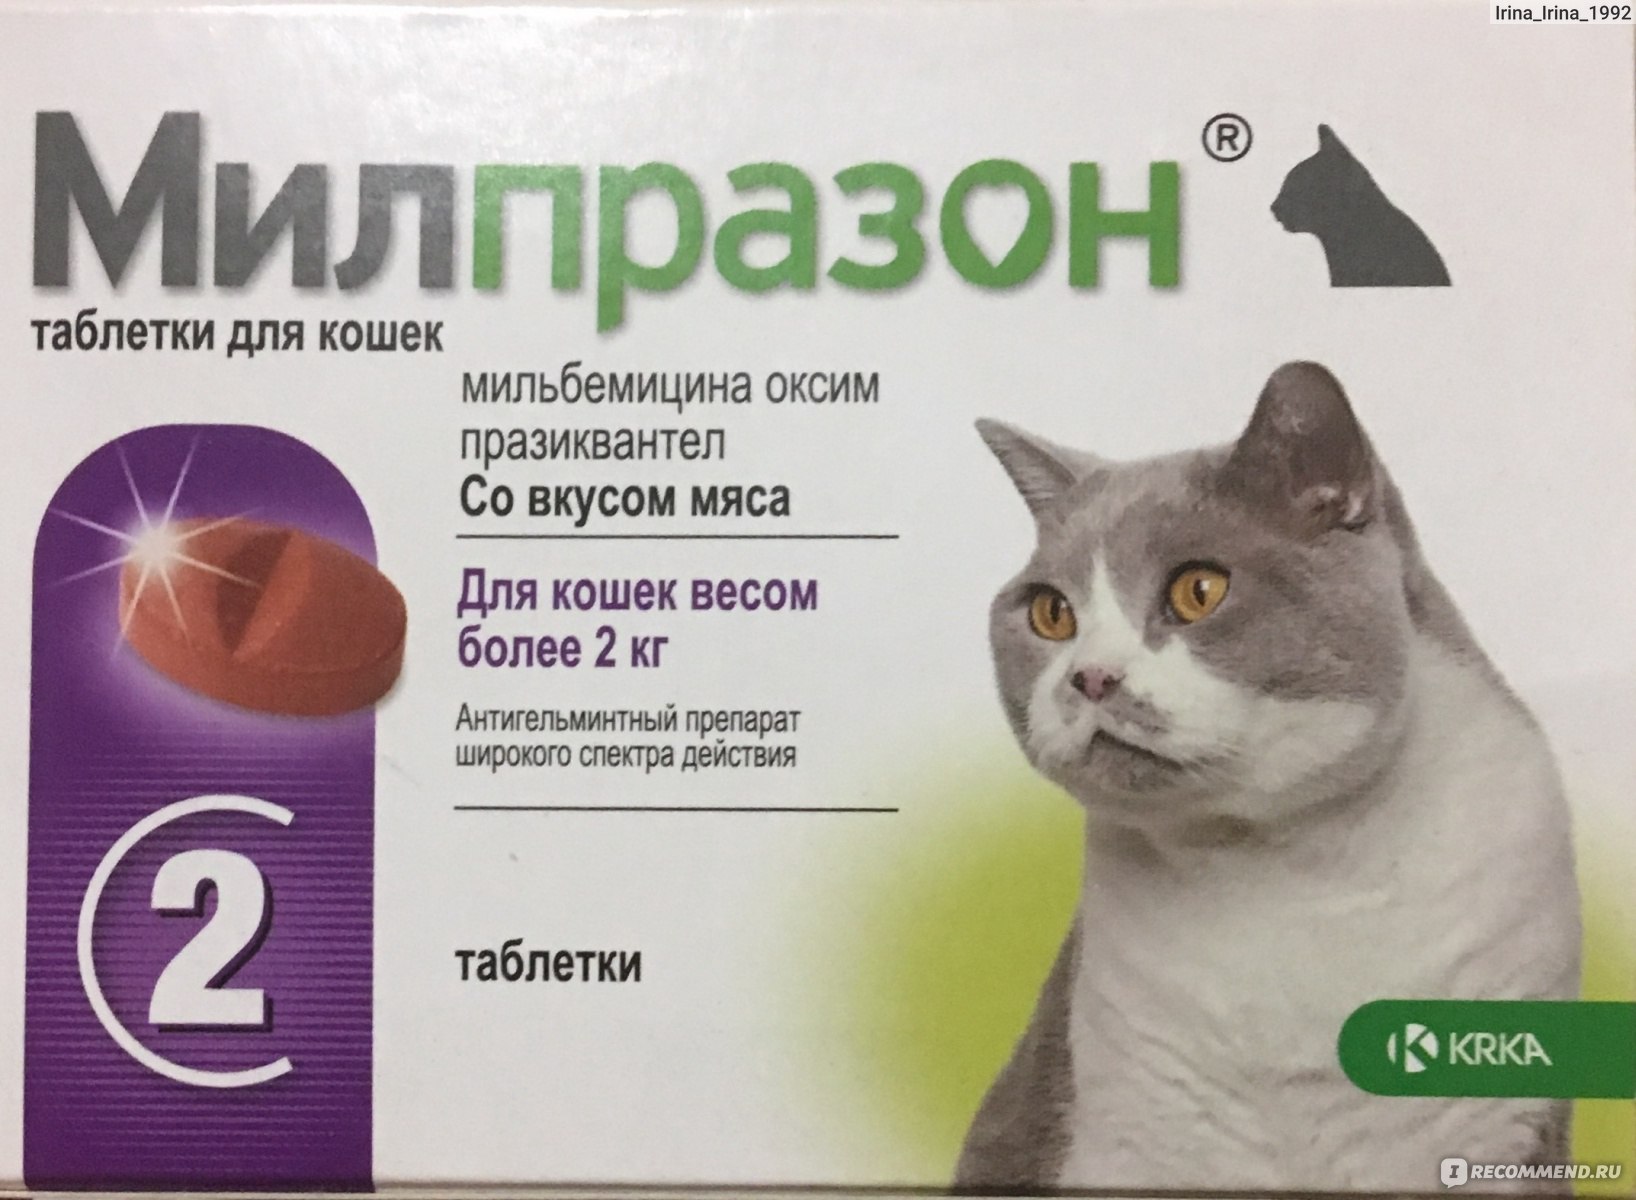 Милпразон для кошек: инструкция по применению